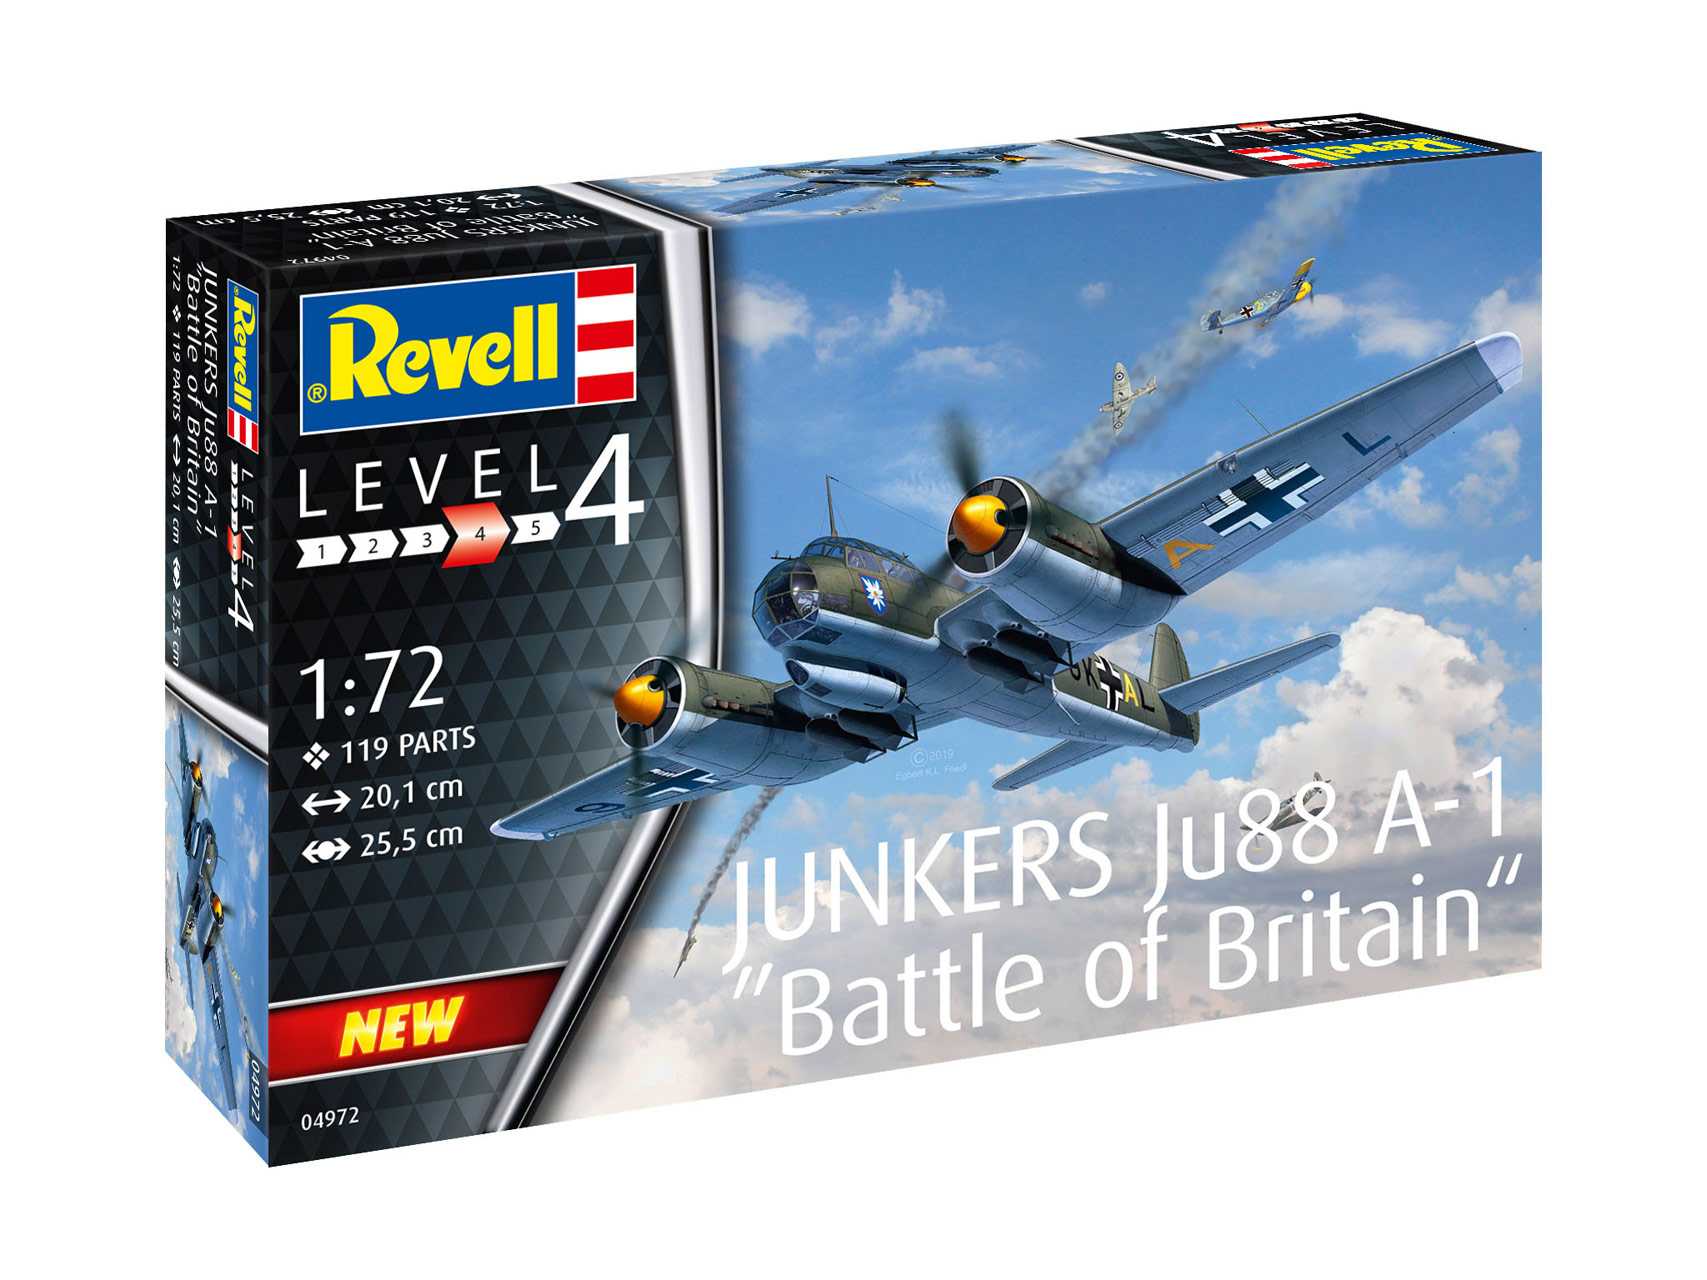 Fotografie Plastic ModelKit letadlo 04972 - Junkers Ju88 A-1 Battle of Britain (1:72)